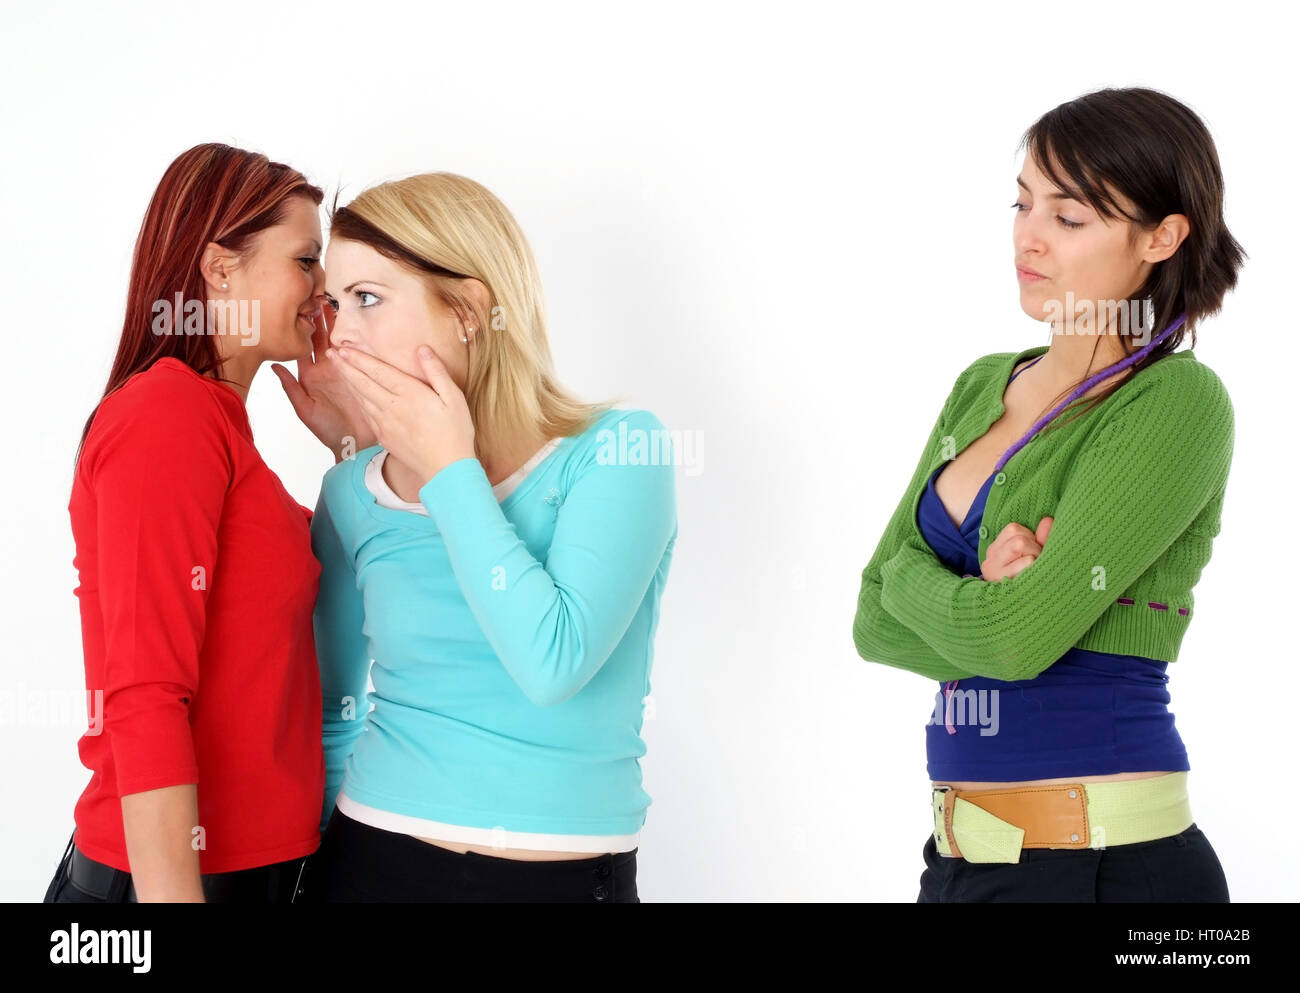 Zwei Frauen fluestern miteinander, eine Frau steht ausgeschlossen daneben - due donne bisbigliano insieme, una donna fuorigioco Foto Stock